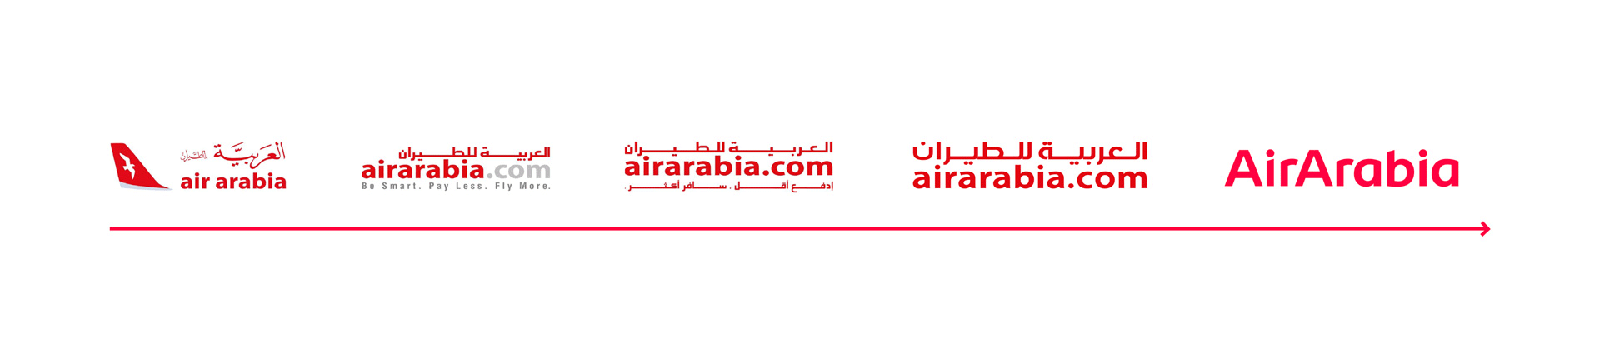 阿拉伯航空公司发布全新的logo和VI识别形象系统设计-深圳vi设计3